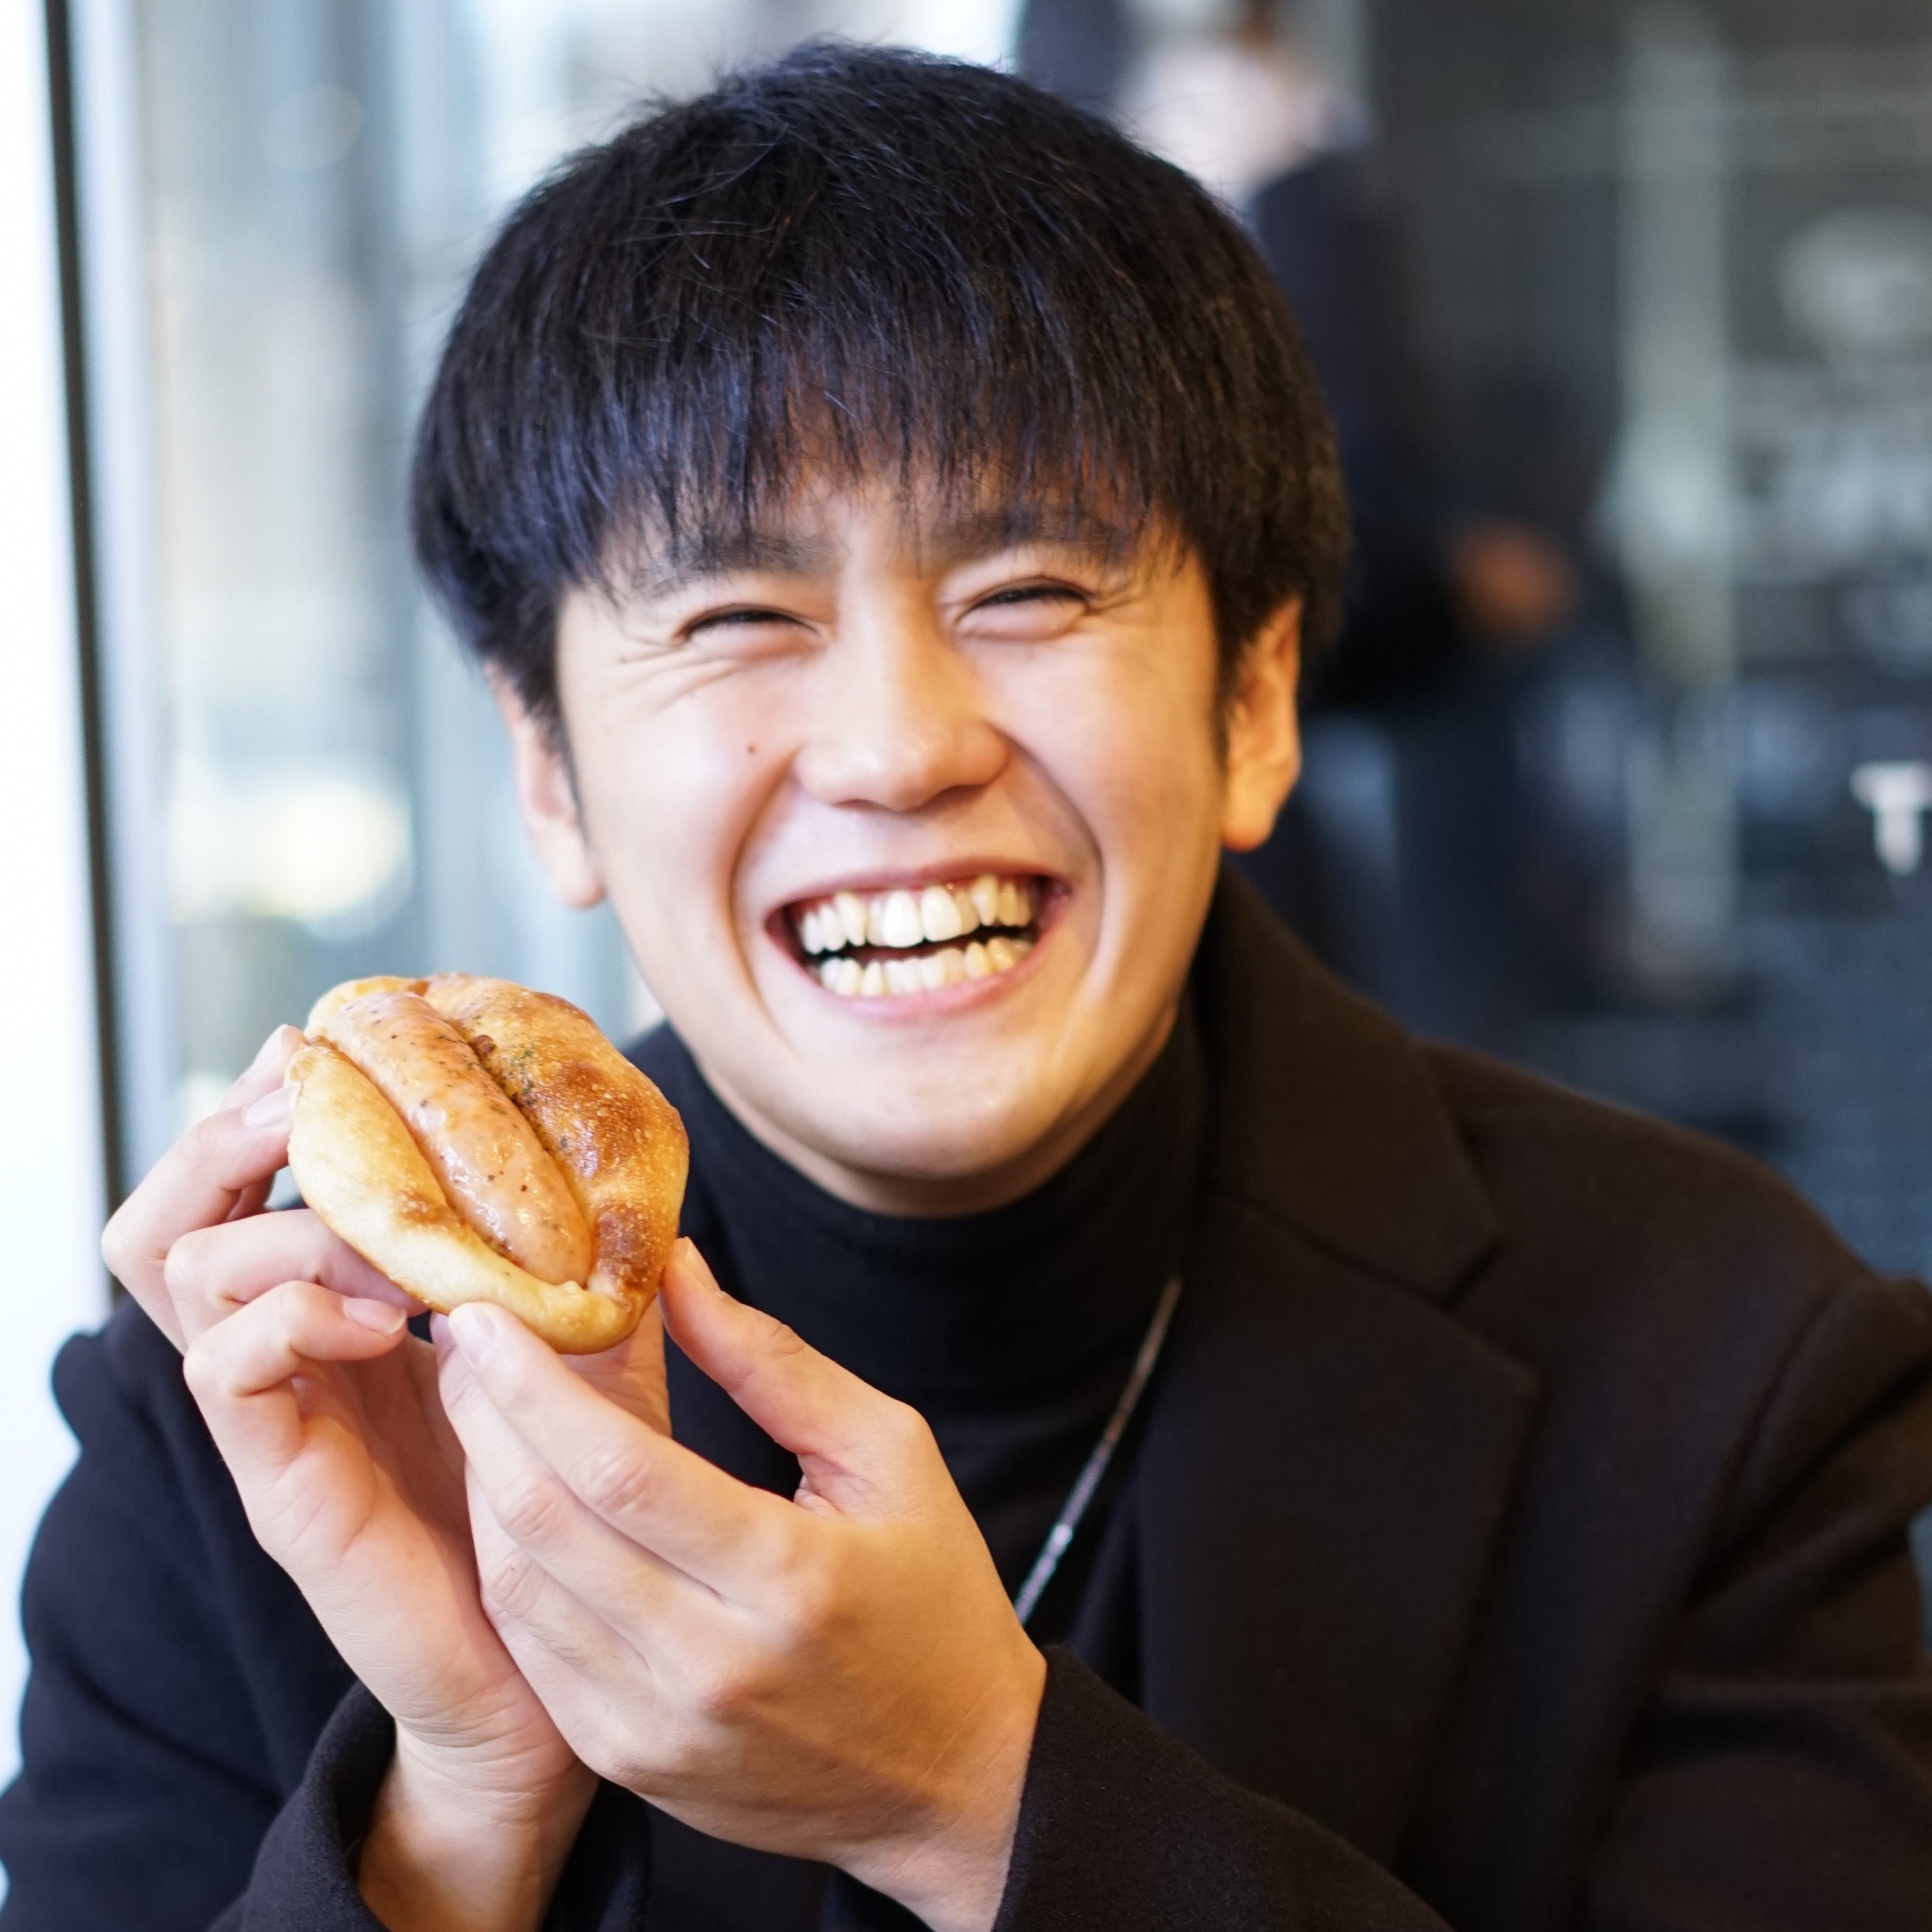 パンを持つ笑顔の男性の写真